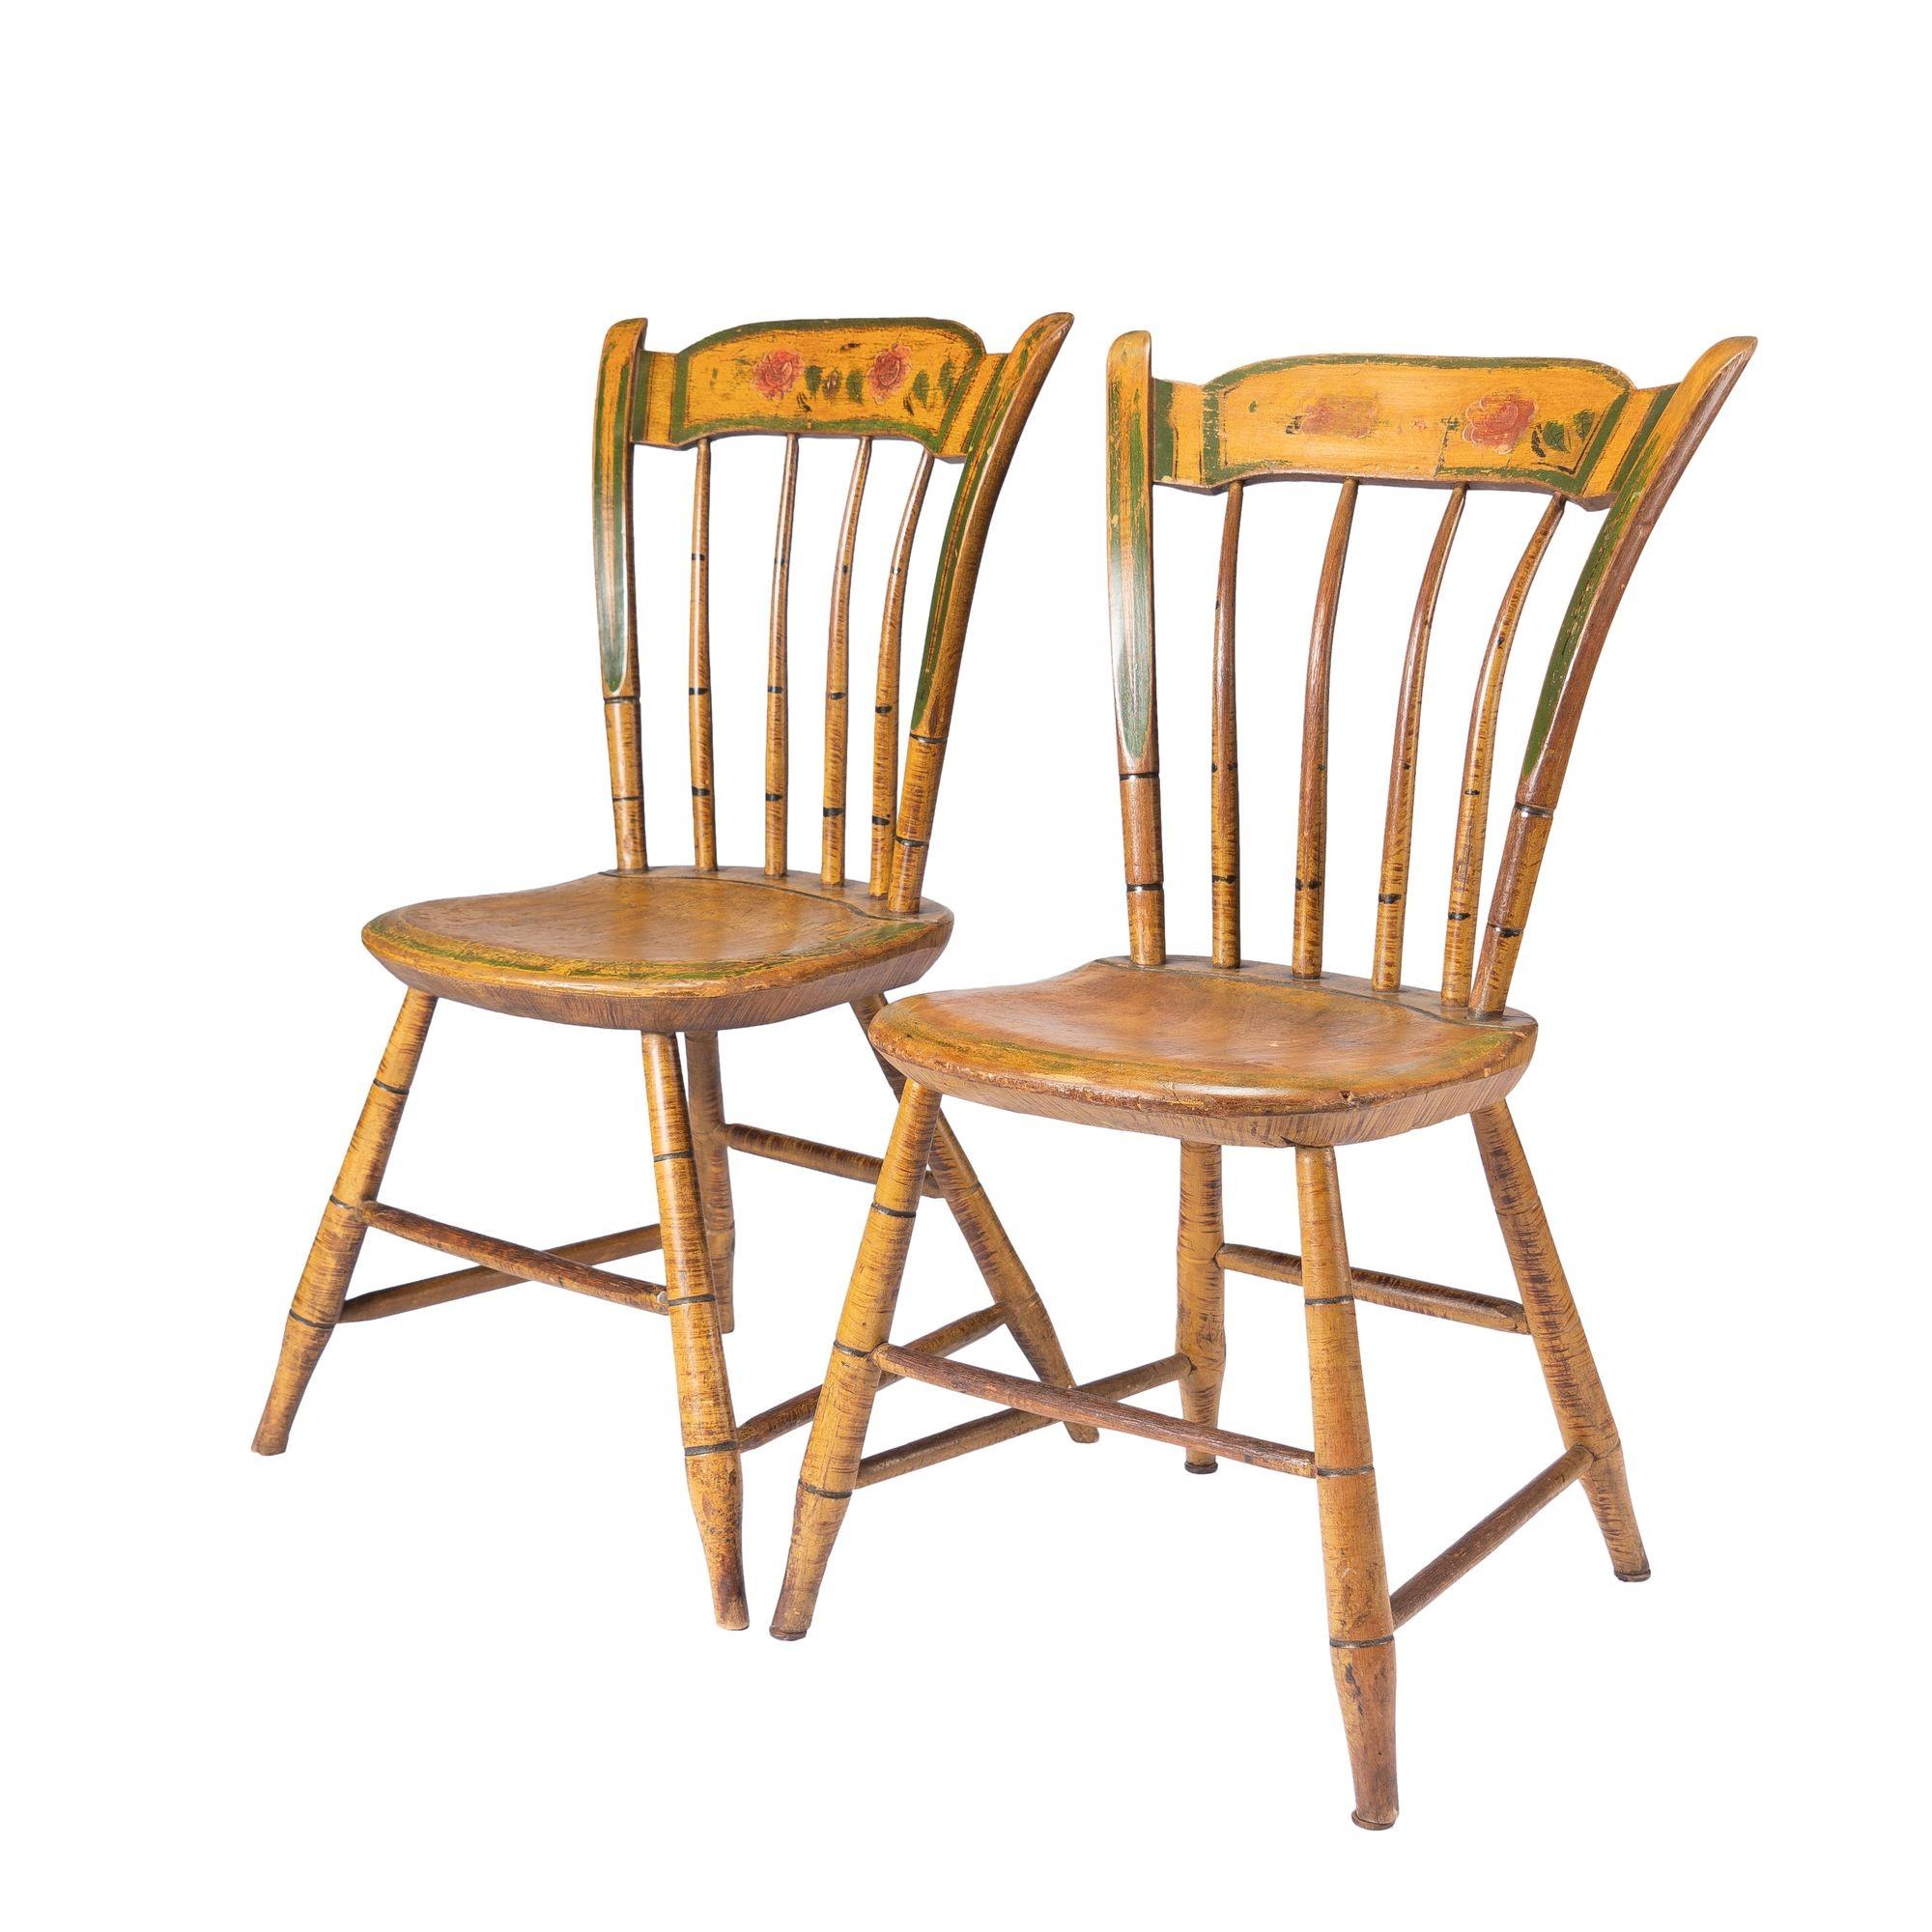 Paire de chaises latérales Windsor à assise en planches et à dossier en pouces, dans leur décor peint d'origine. Les chaises reposent sur quatre pieds évasés tournés en bambou et reliés par des brancards tournés à caisson. Le dossier en fuseau